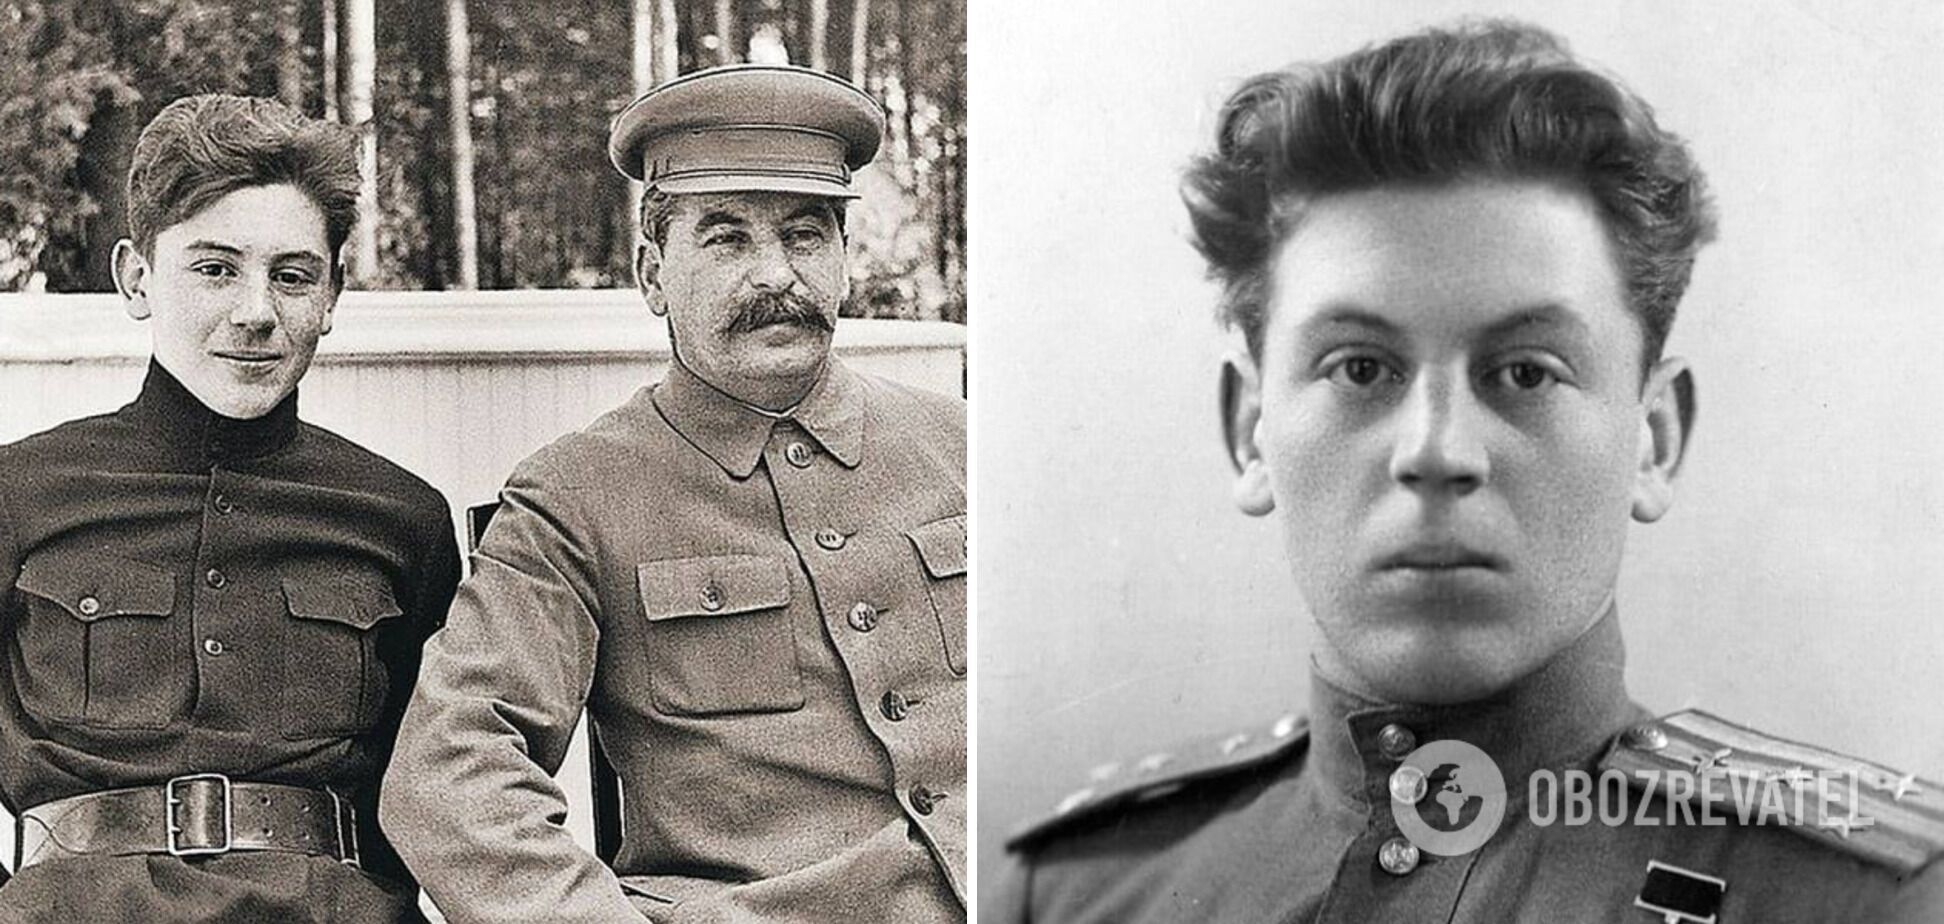 Син вождя Сталіна - Василь палив і пиячив